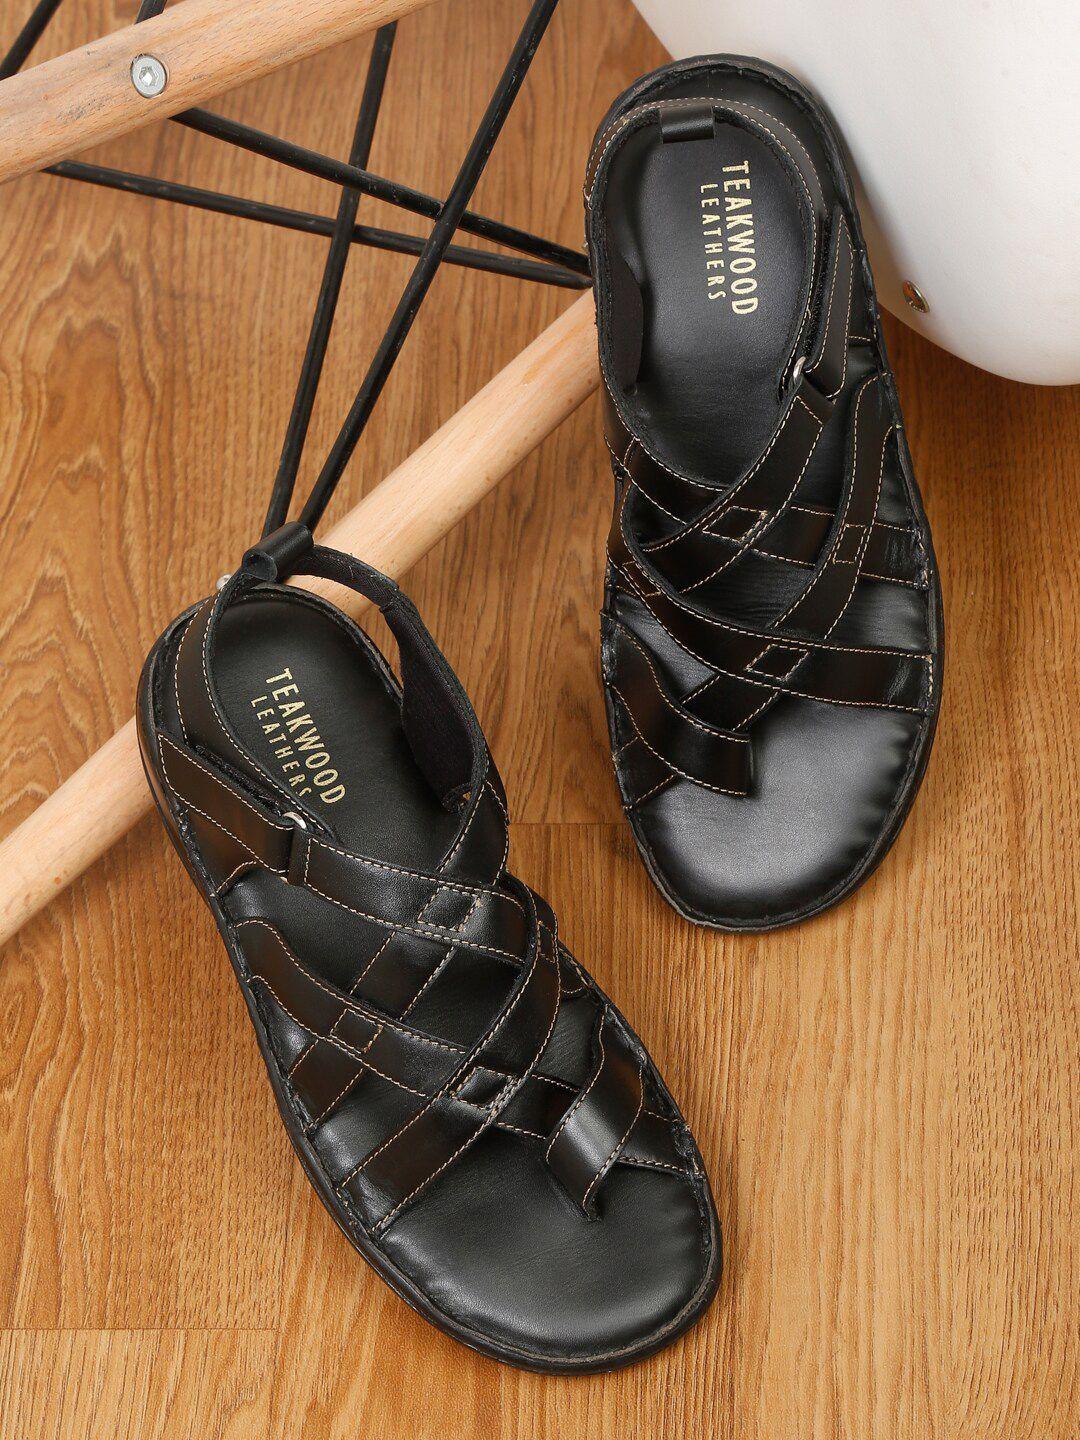 teakwood leathers men black leather comfort sandals